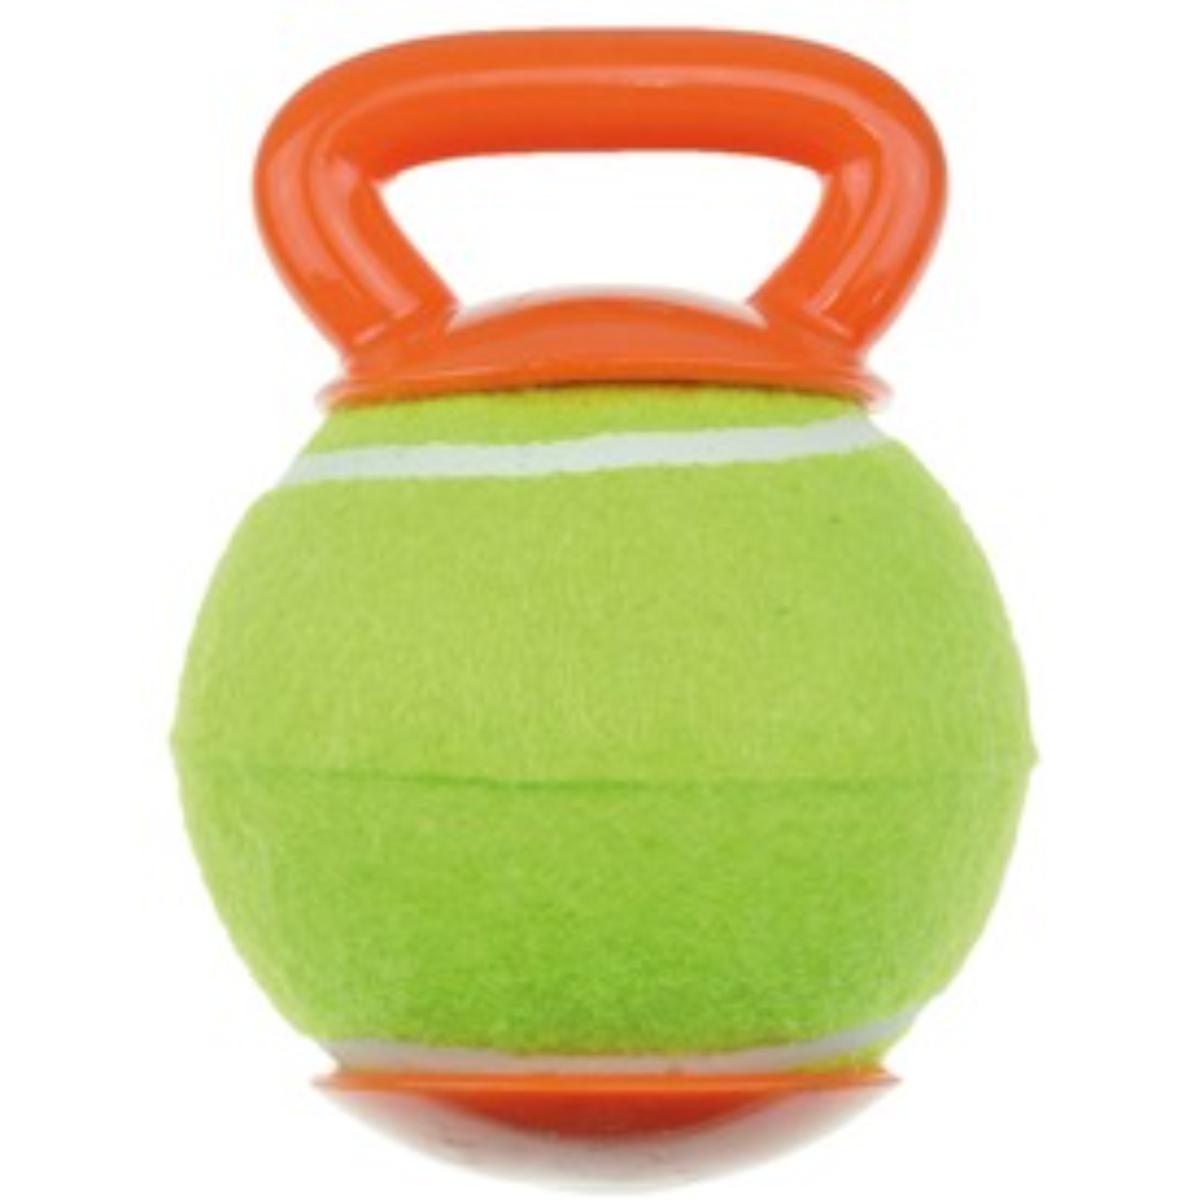 M-PETS Baggy, jucărie minge câini, activități fizice, cauciuc M-PETS Baggy, jucărie minge câini S-L, activități fizice, cauciuc, portocaliu și verde, ⌀18.4cm